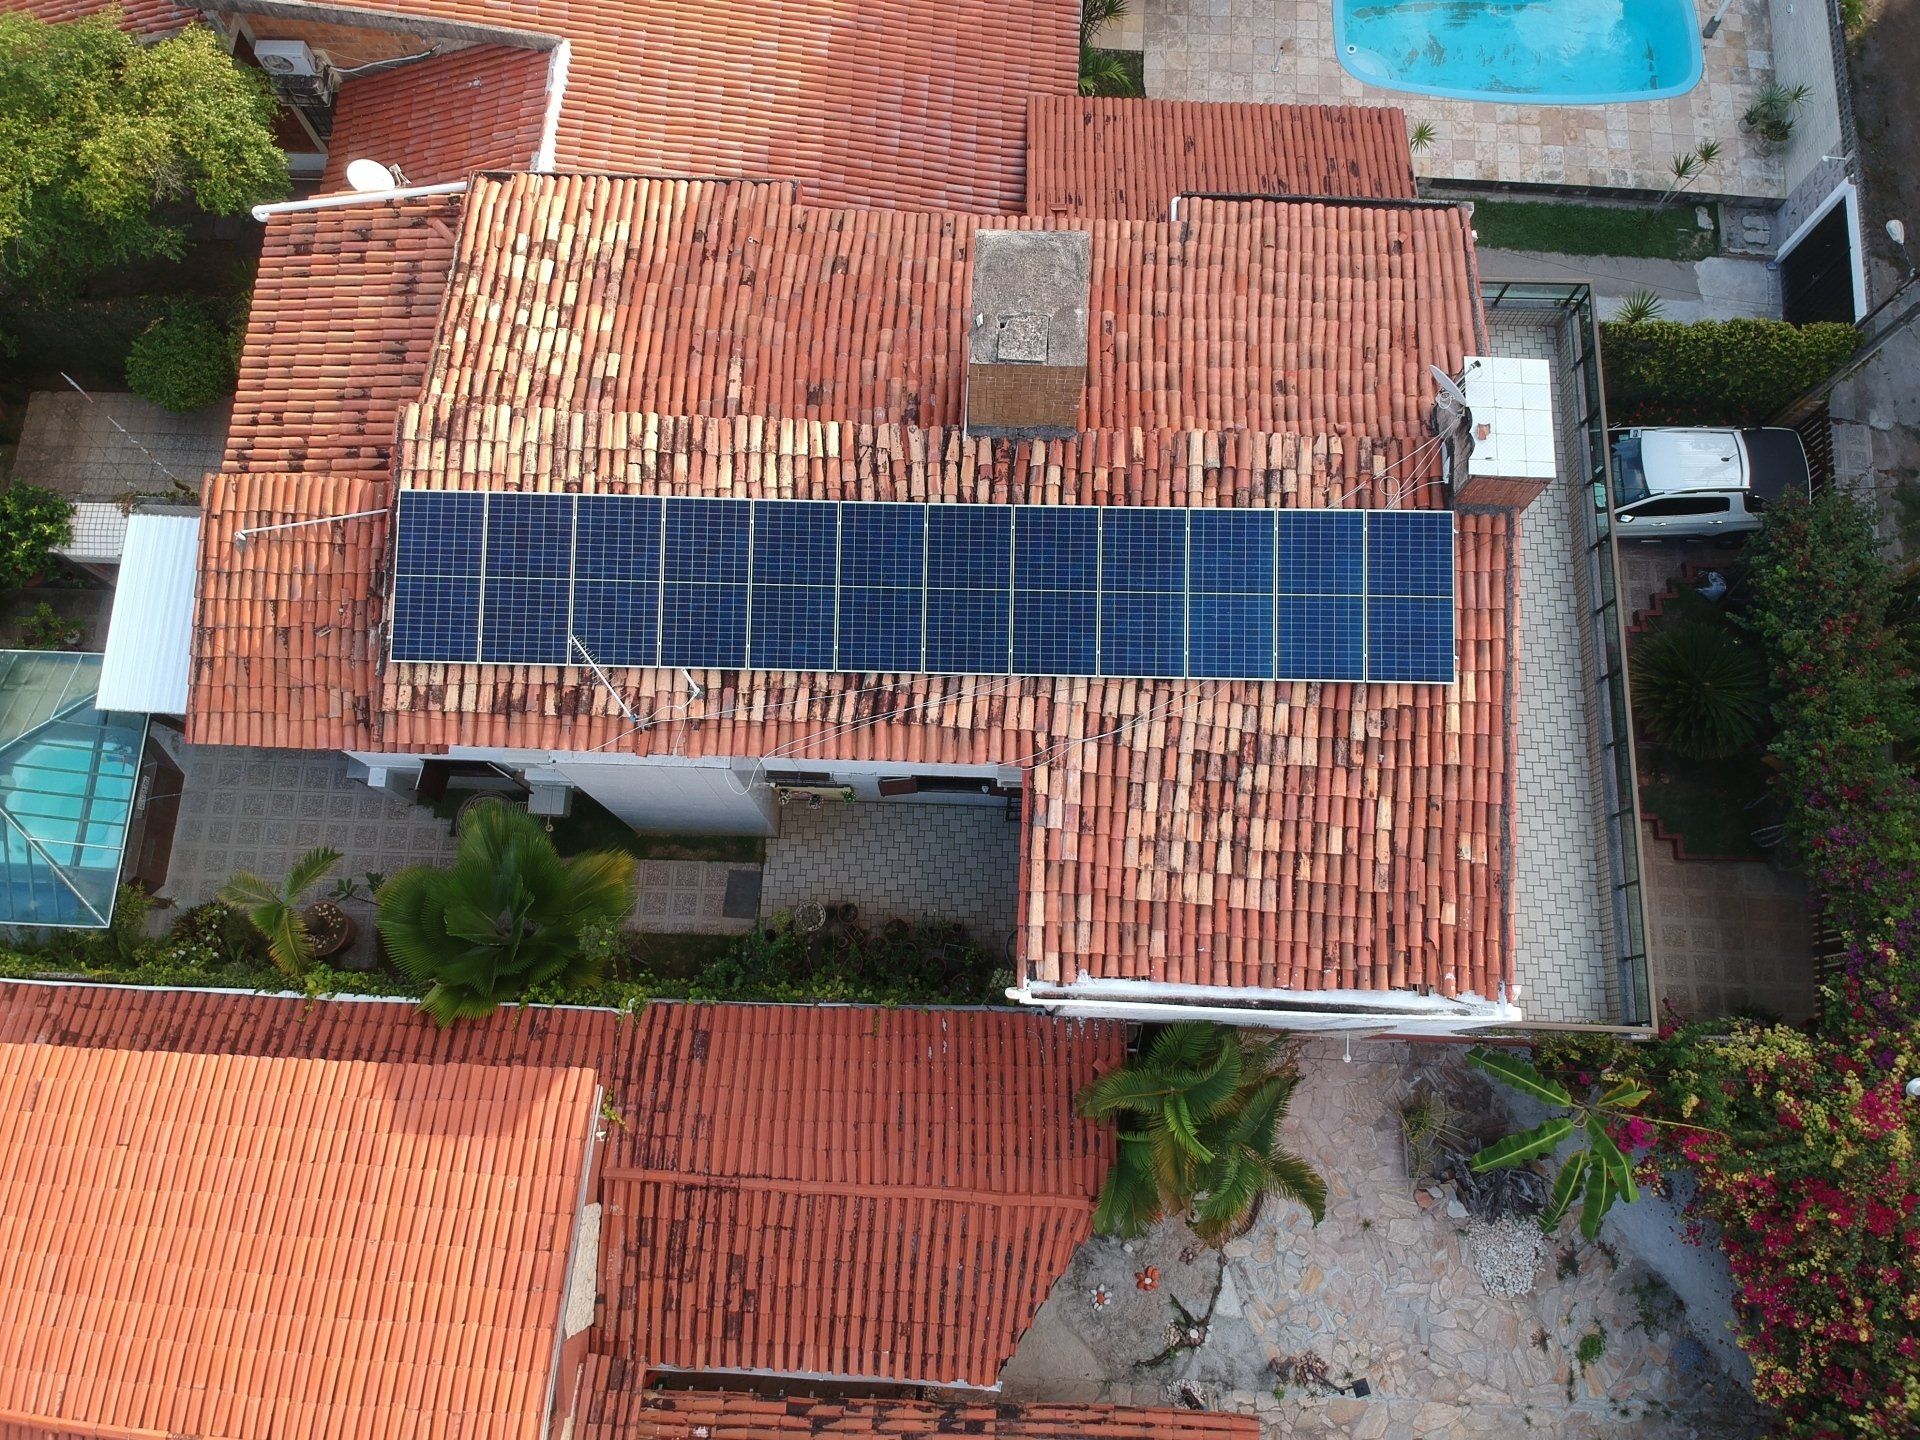 Sistema realizado no Maria Farinha, - Paulista/PE. Composto por 12 módulos Solar Fotovoltaico de potência 415W e 03 Micro inversores Apsystems. Com Plataforma para monitoramento Online.